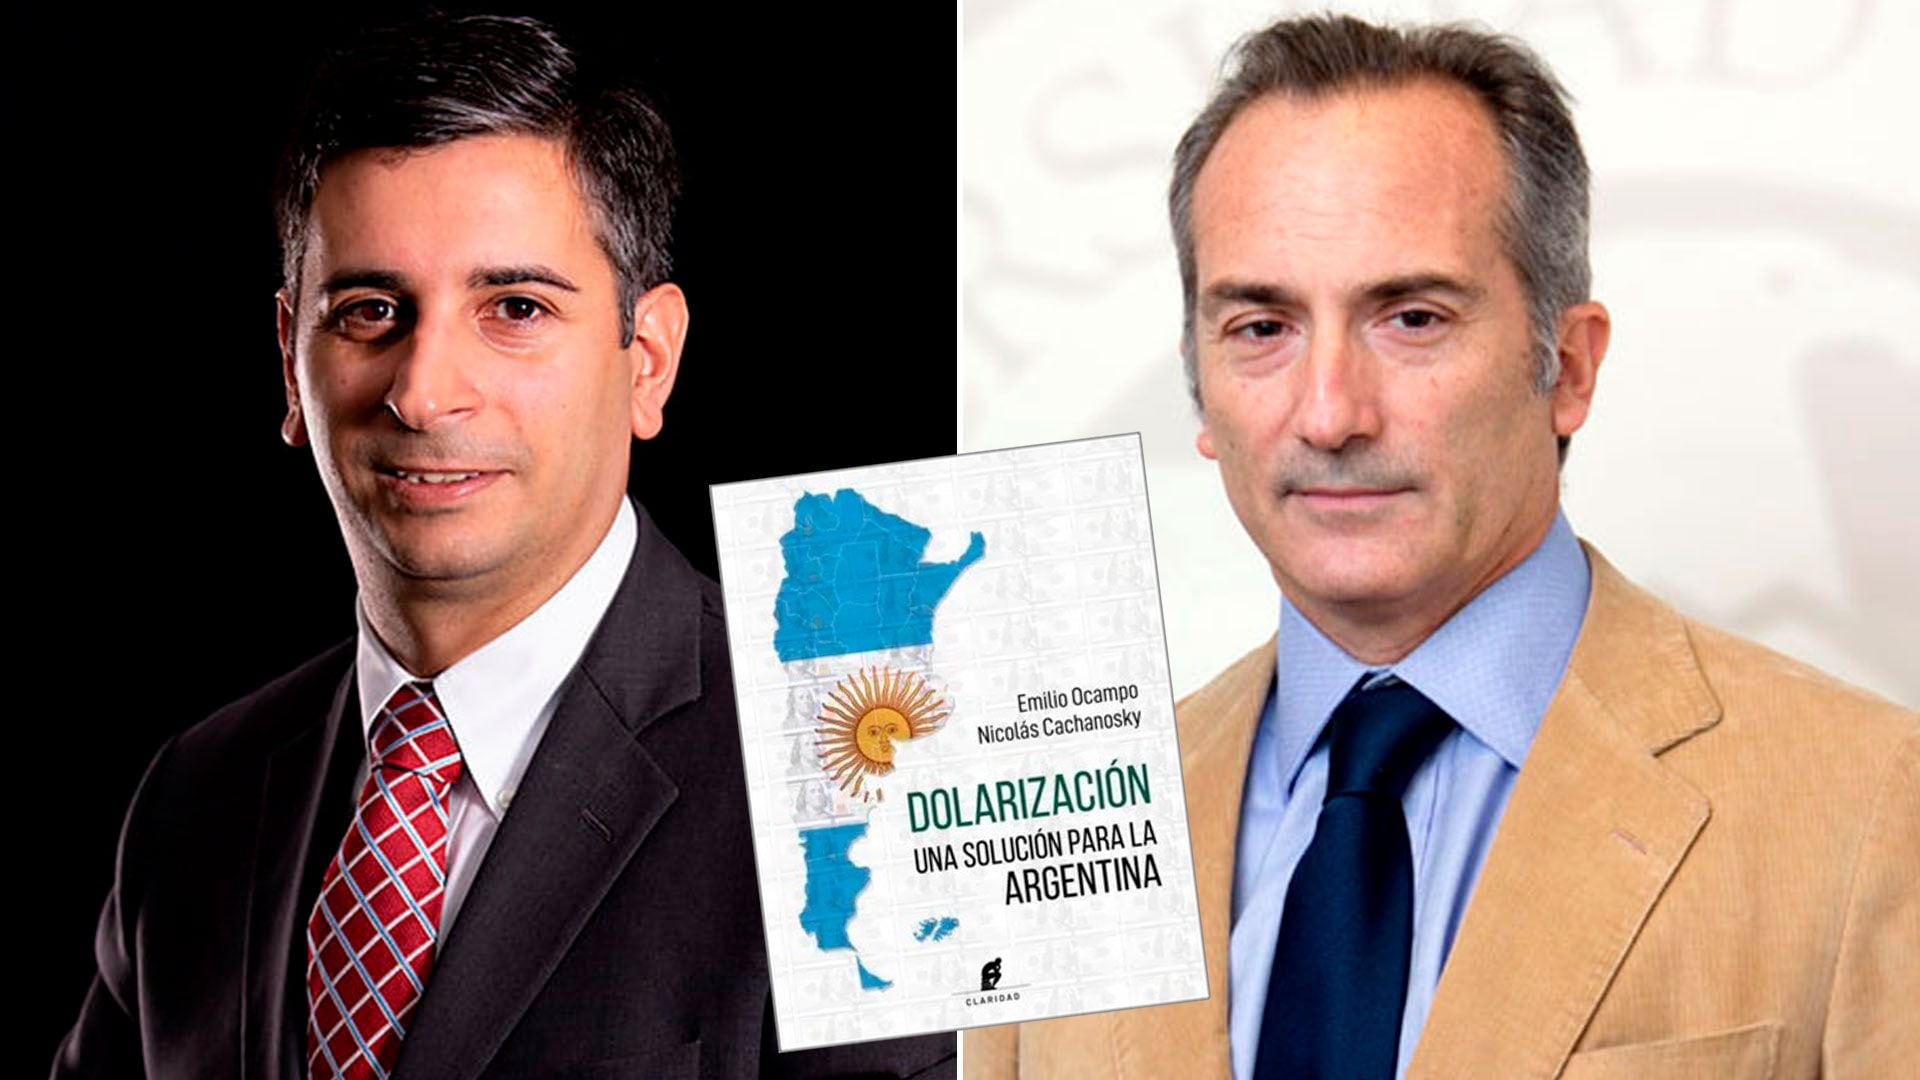 Emilio Ocampo y Nicolás Cachanosky escribieron "Dolarización, una solución para Argentina"